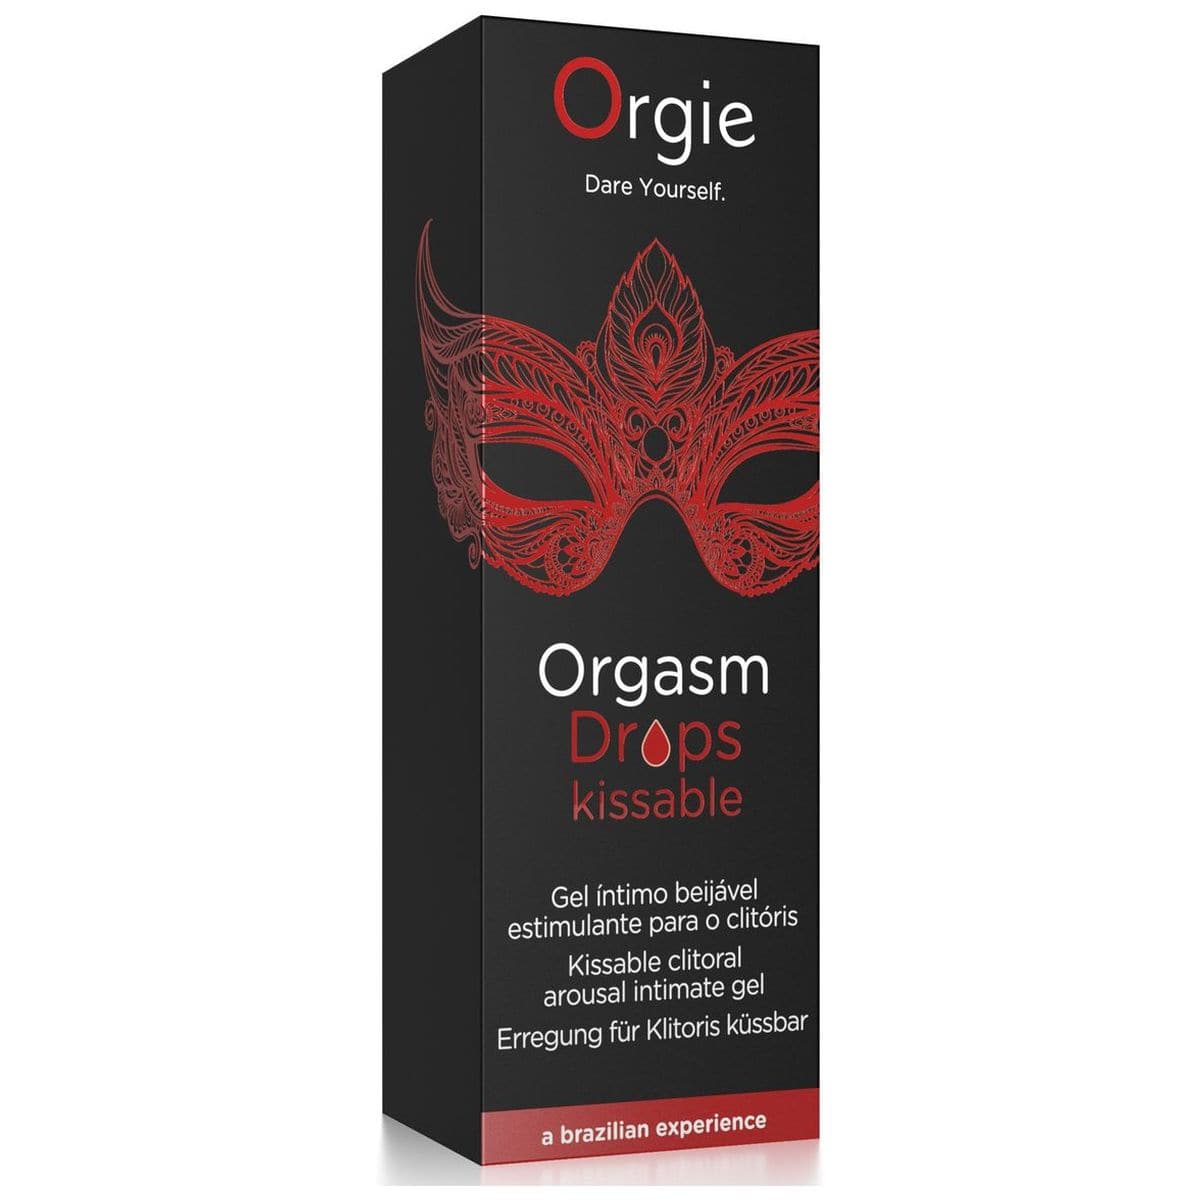 Estimulante Orgasm Drops Beijável 30ml - Efeito Calor e Formigueiro  Orgie   